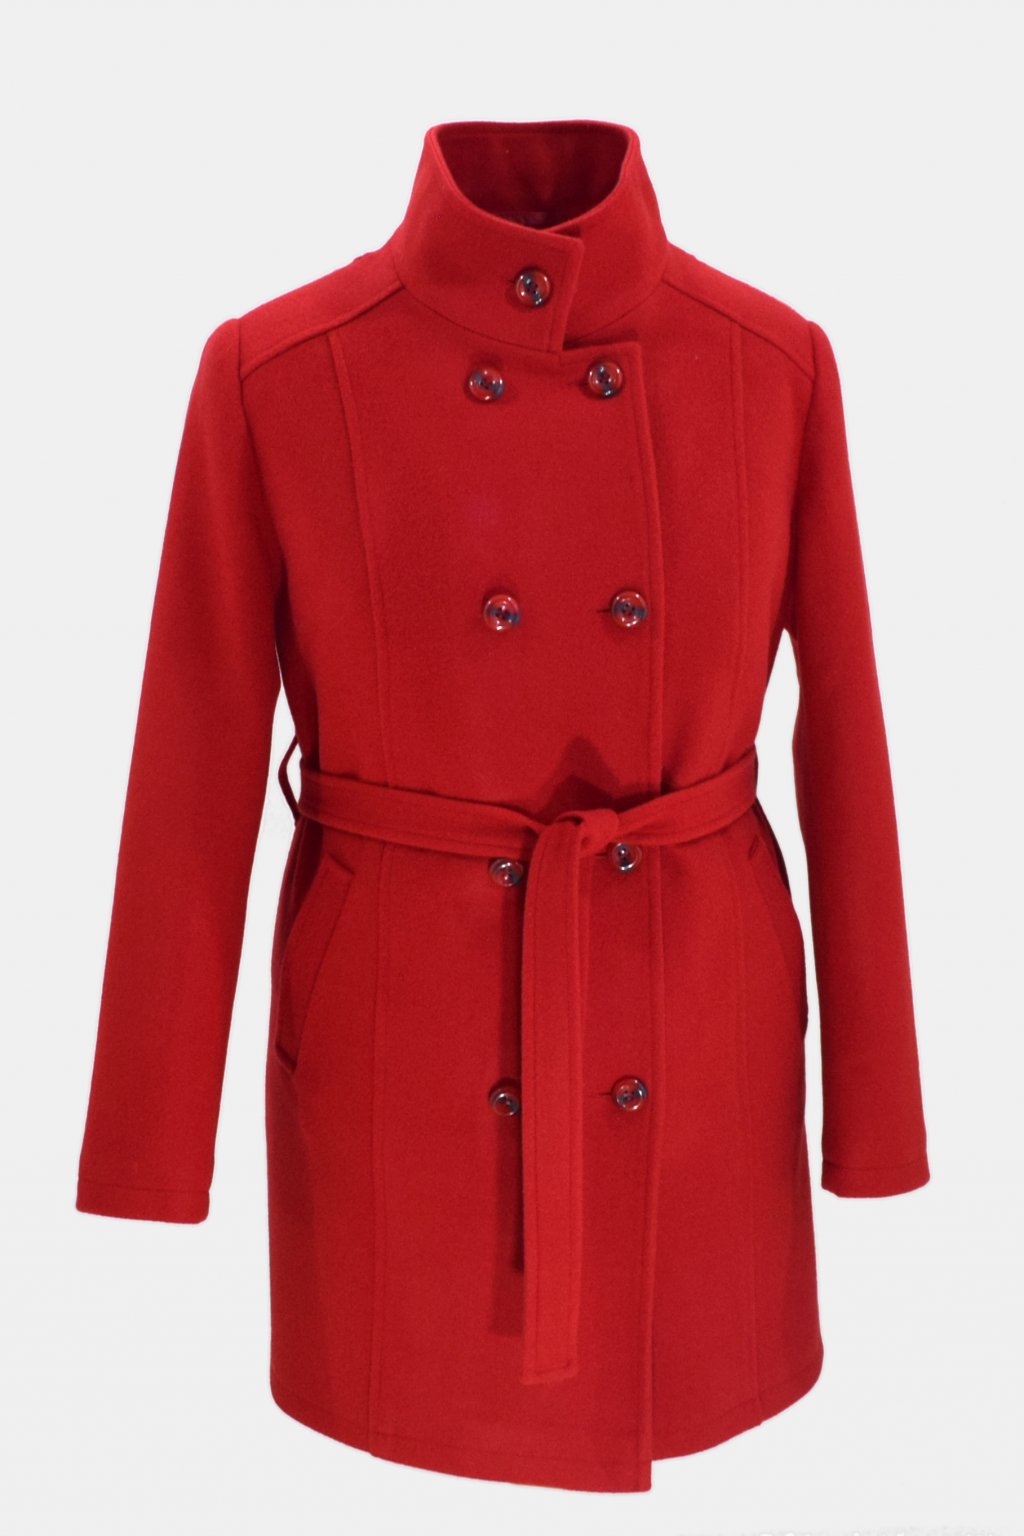 Dámský červený zimní kabát Sofie.